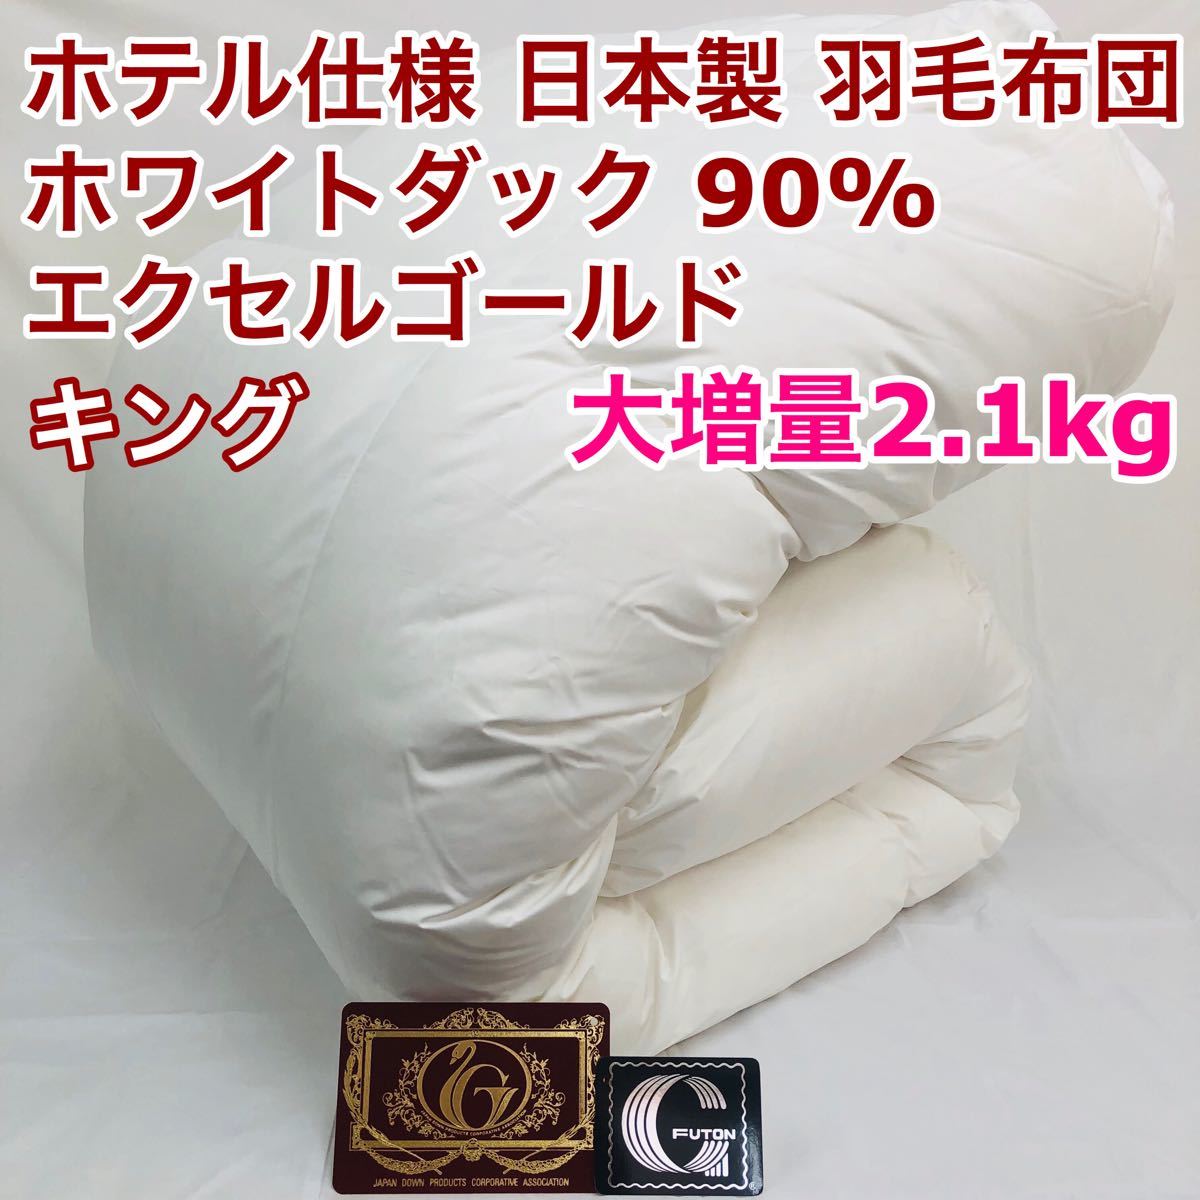 羽毛布団 セミダブル ホワイトダック90% 日本製 エクセルゴールド